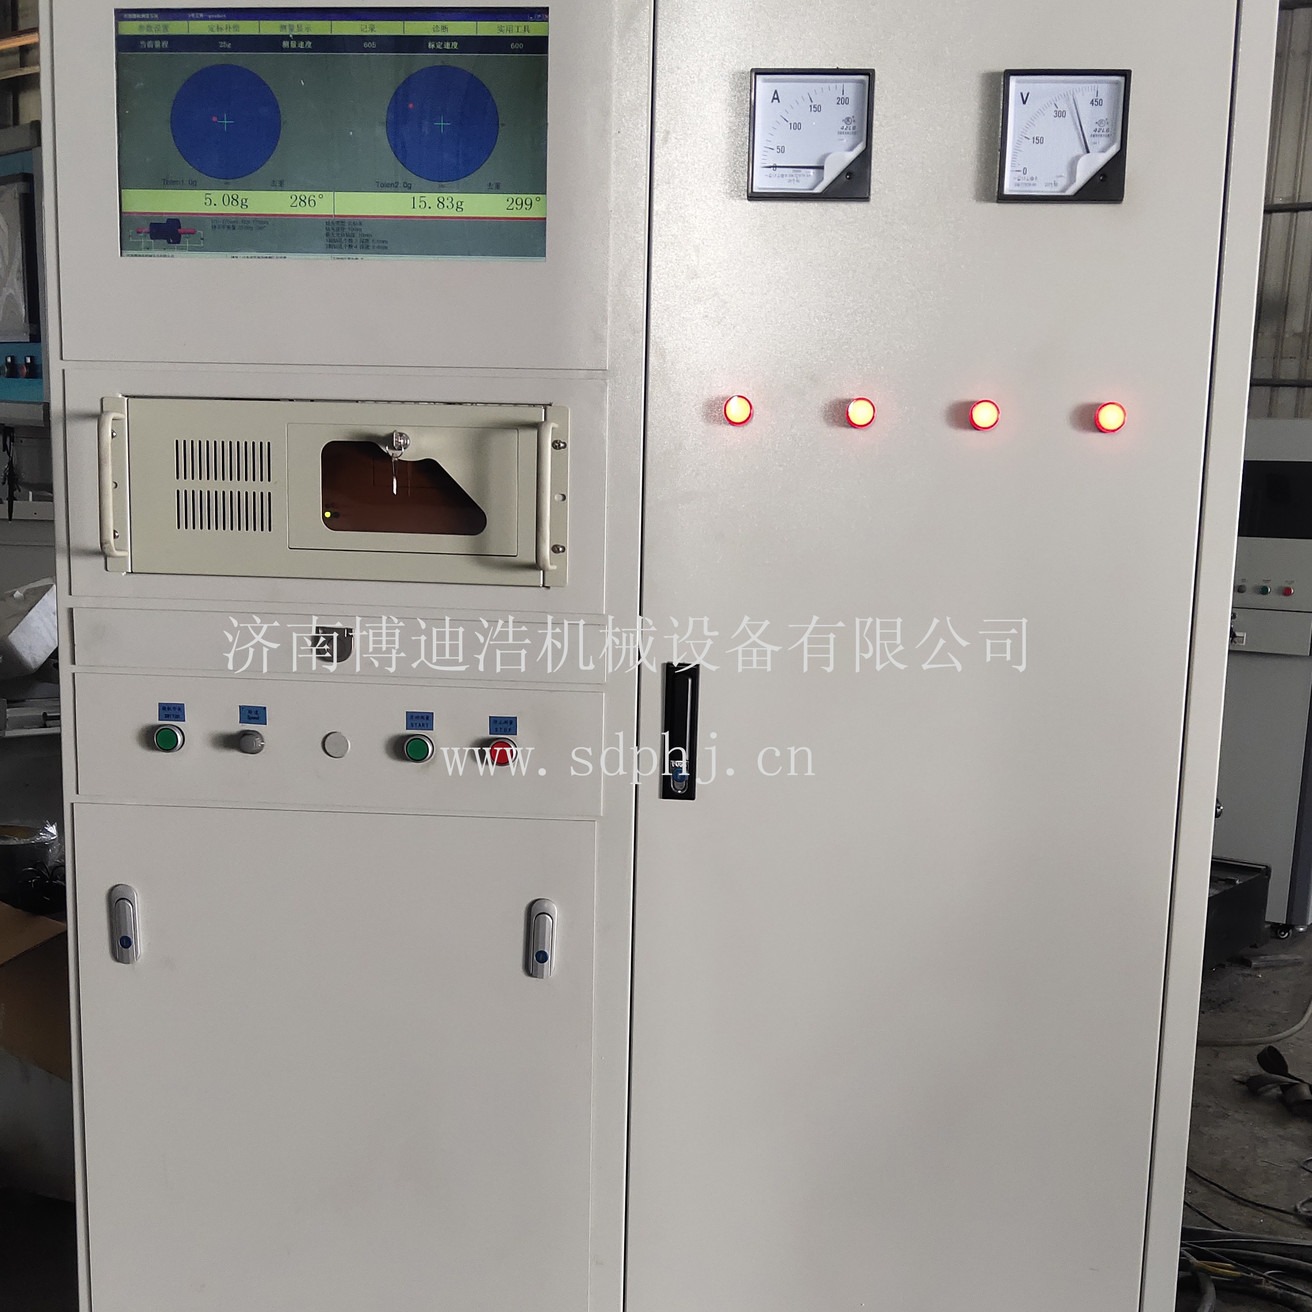 上海动平衡机厂家 博迪浩供应GB-2000动平衡机测量系统